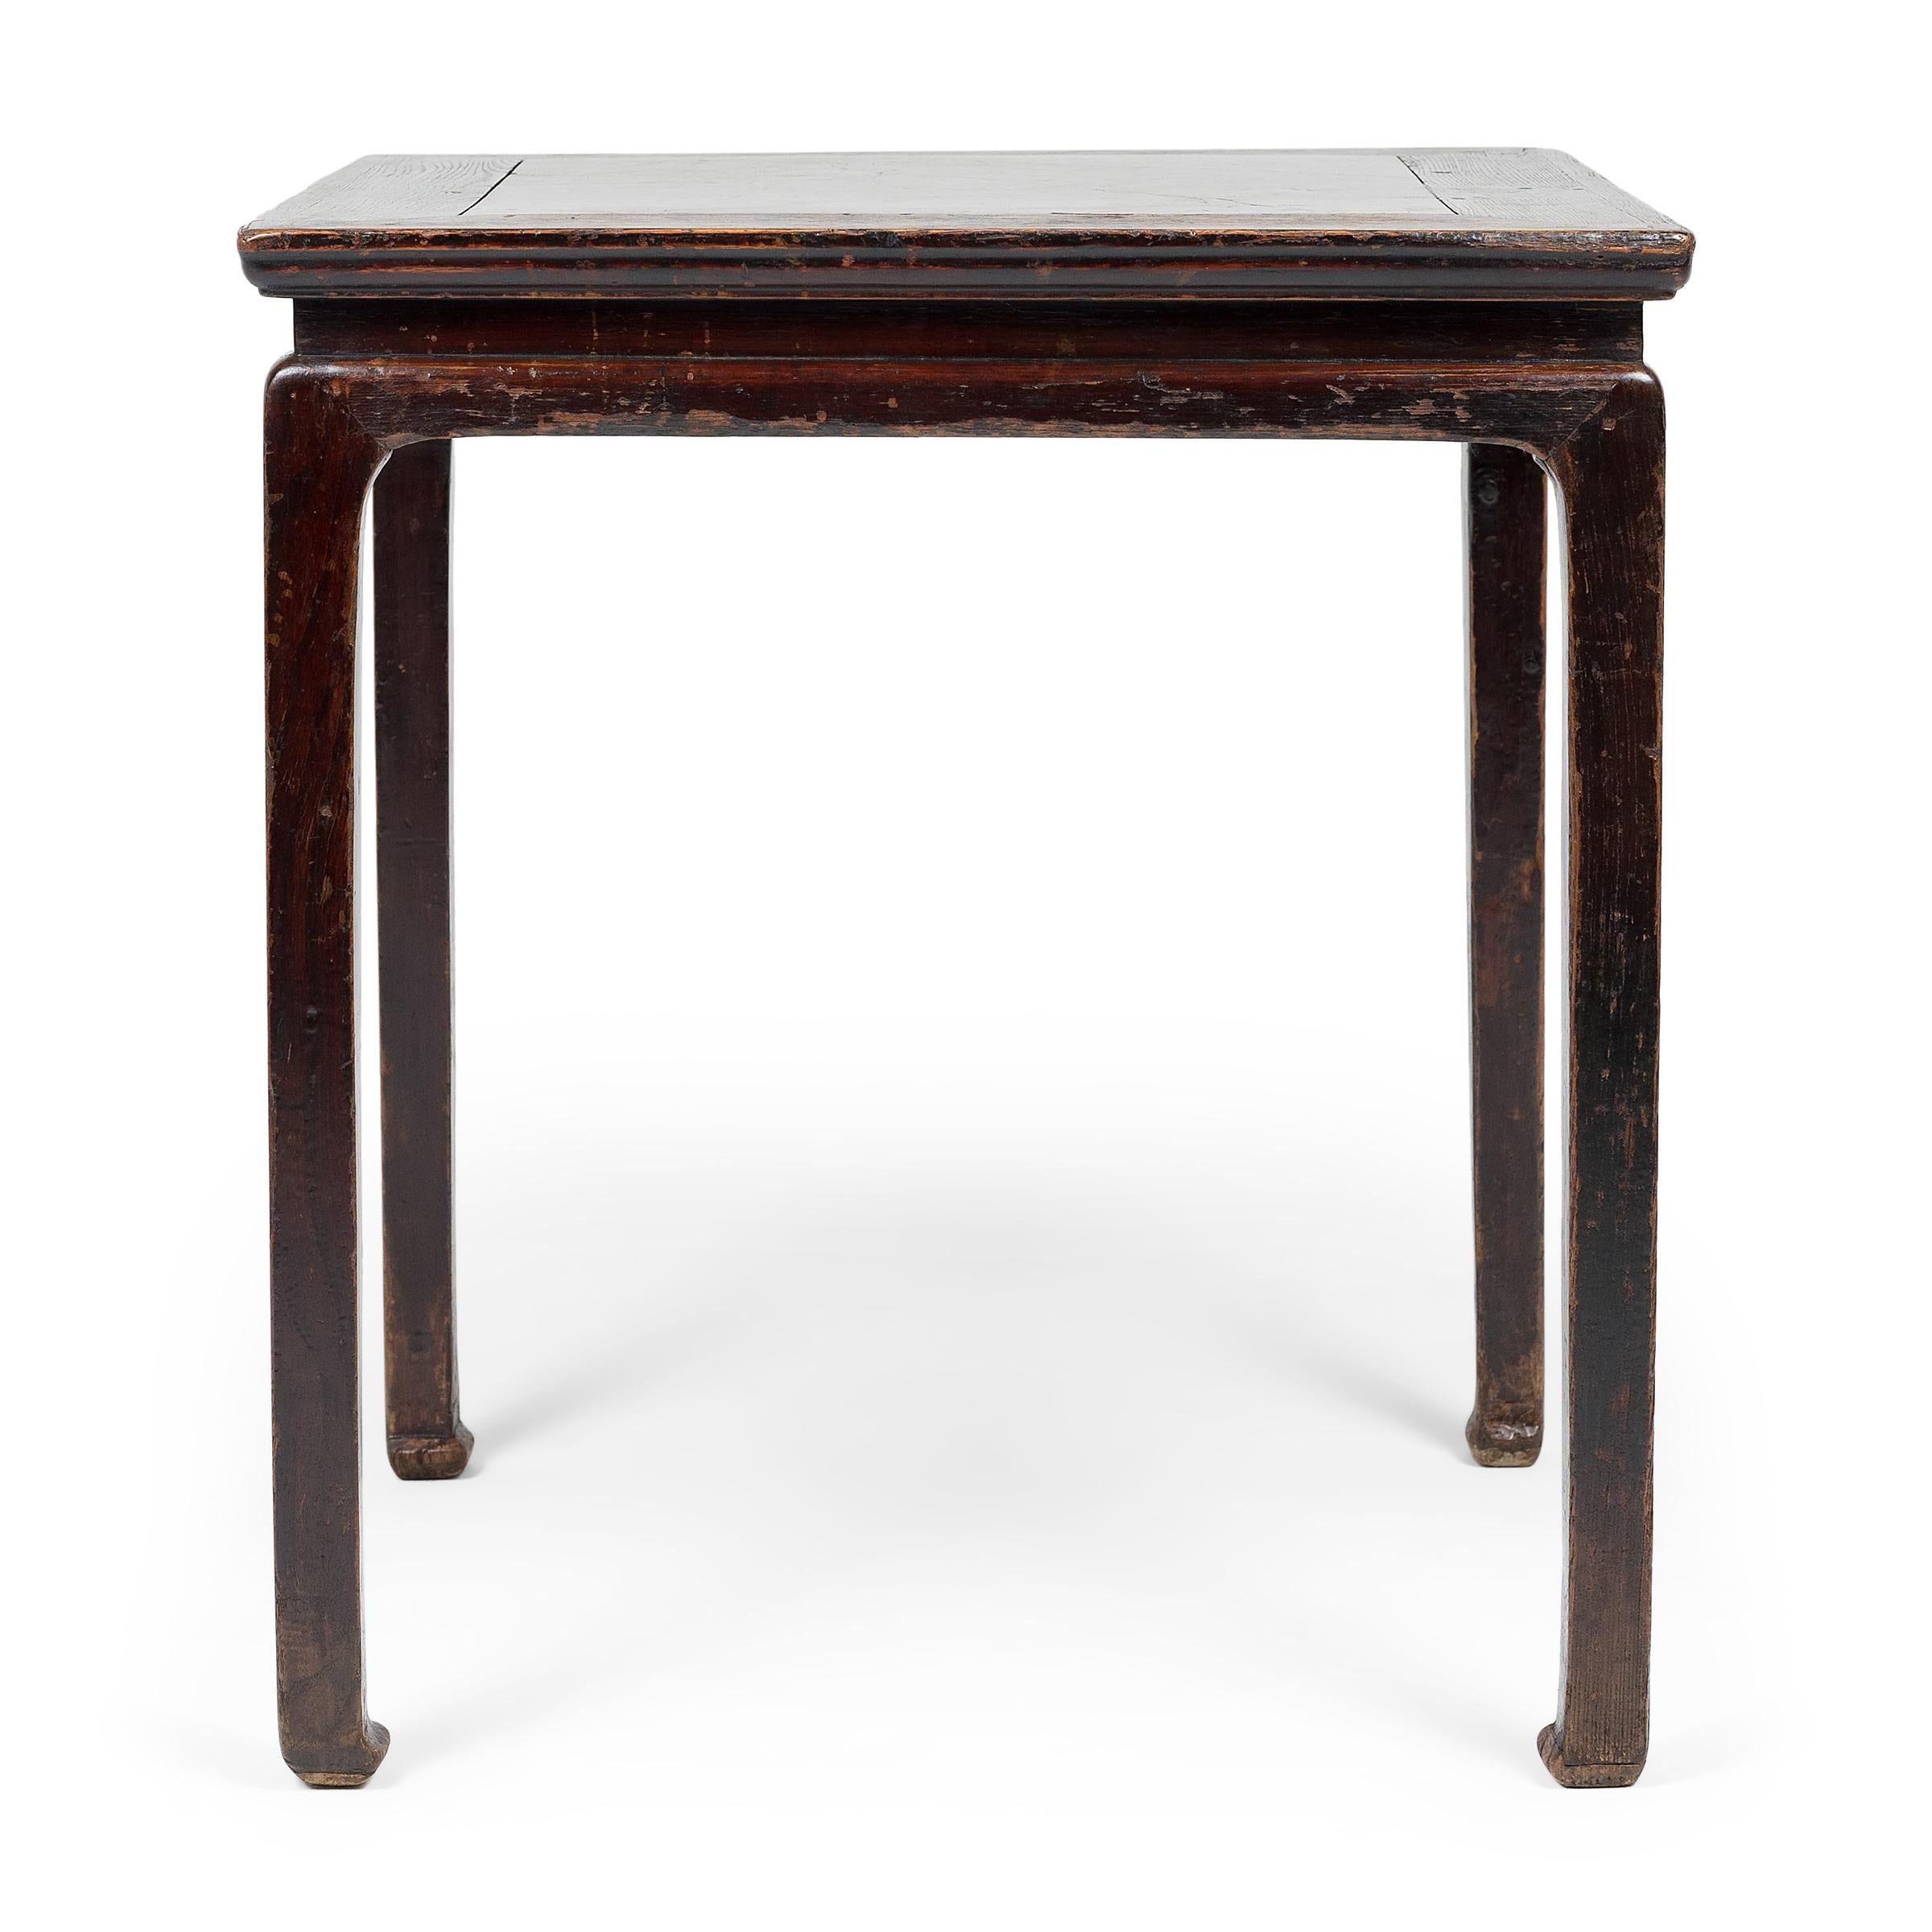 Dieser quadratische Tisch aus dem 19. Jahrhundert ist mit einer massiven Platte aus Puddingstein eingelegt, einem Konglomeratstein, der seit langem wegen seiner schönen unregelmäßigen Musterung geschätzt wird. Die Einlegearbeit ist ein besonders